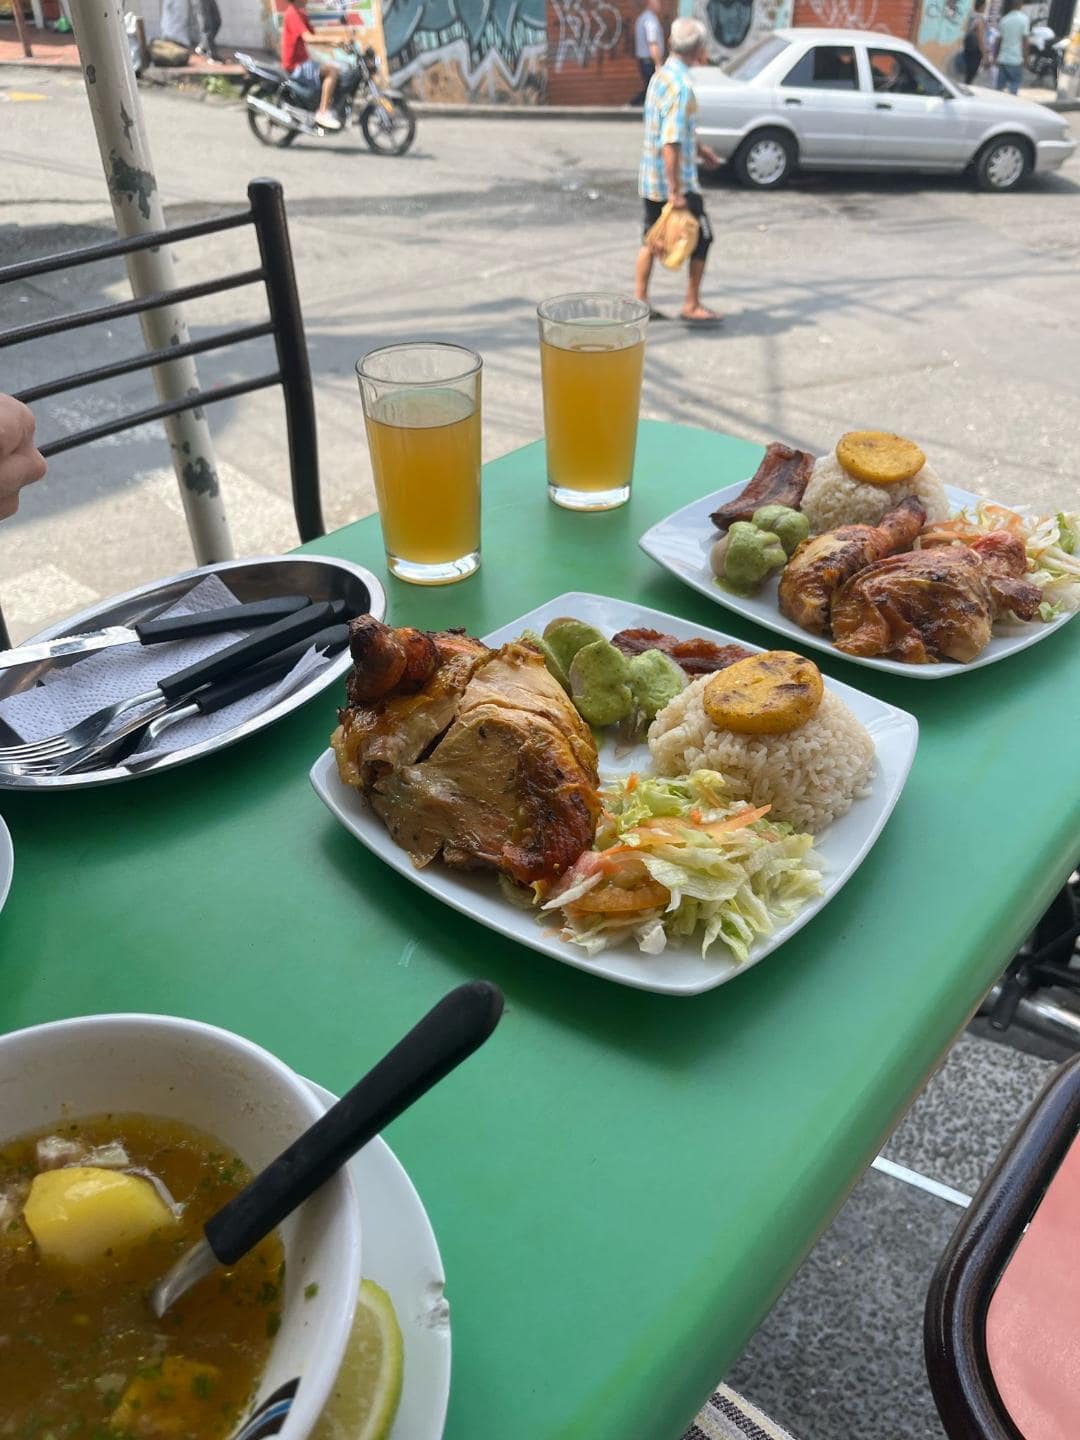 Na stole je hlavné jedlo kuracie prsia s ryžou a zeleninou a polievka. Sú tam aj dva oranžové nápoje.